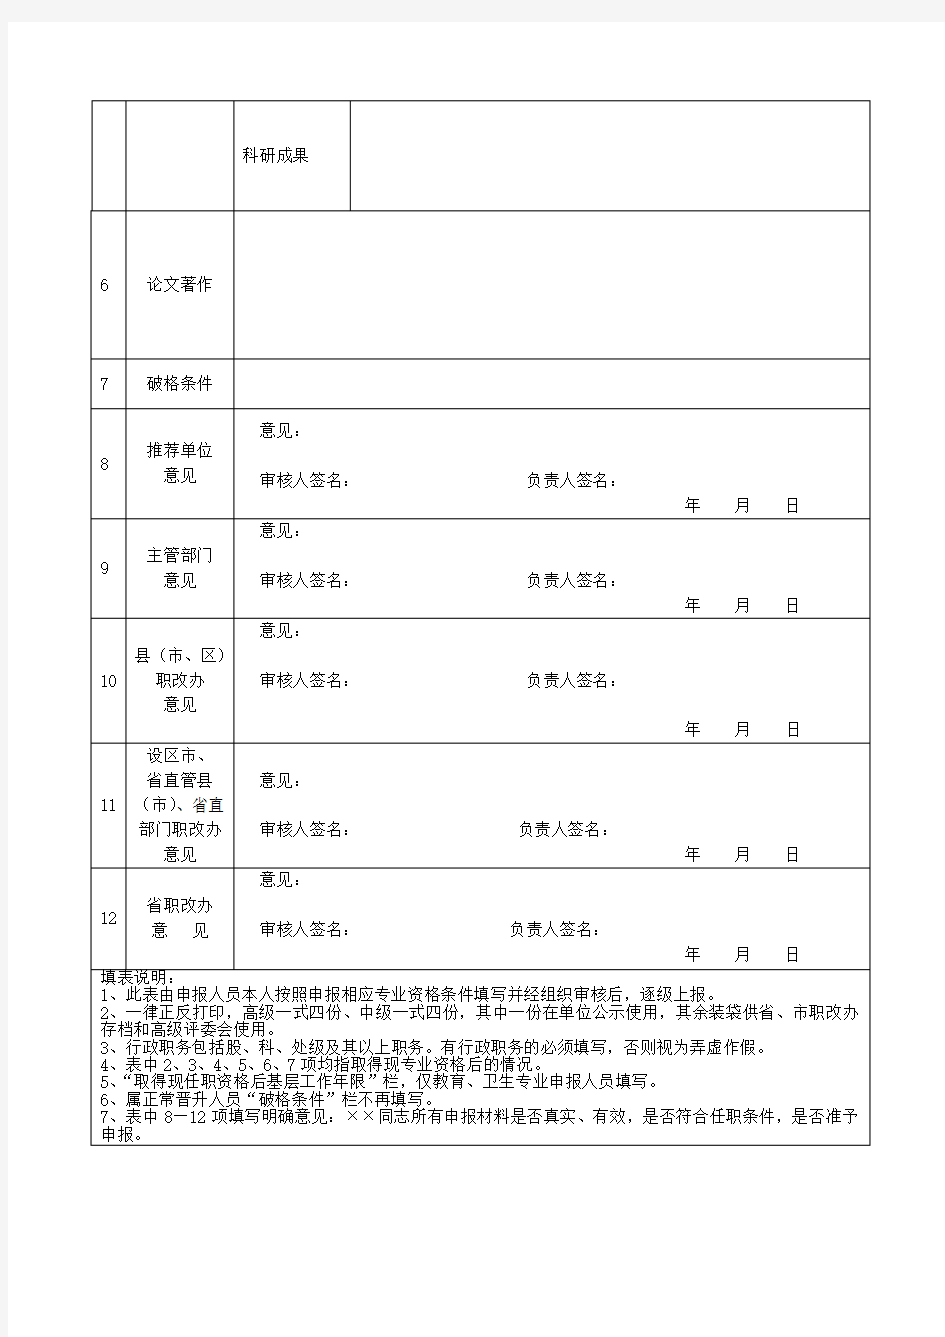 【职称评审】专业技术职务任职资格情况一览表(模板)